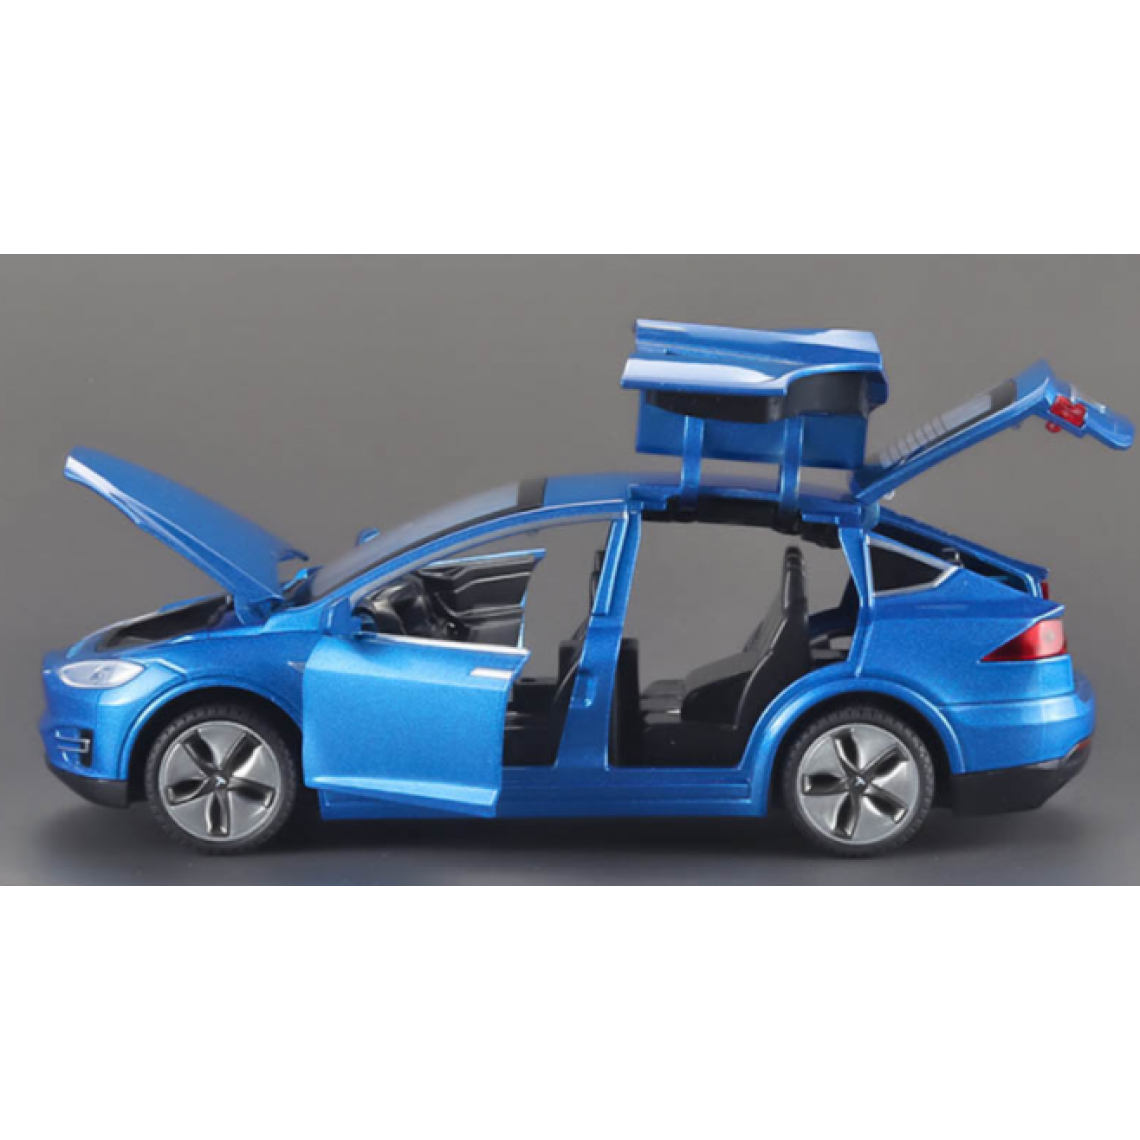 Universal - 1/32 Alliage Tesla Modèle X90 Voiture jouet moulée sous pression Simulation Acoustique et Lumière Retour Voiture jouet Collection Cadeaux | Voiture jouet moulée sous pression(Bleu) - Voitures